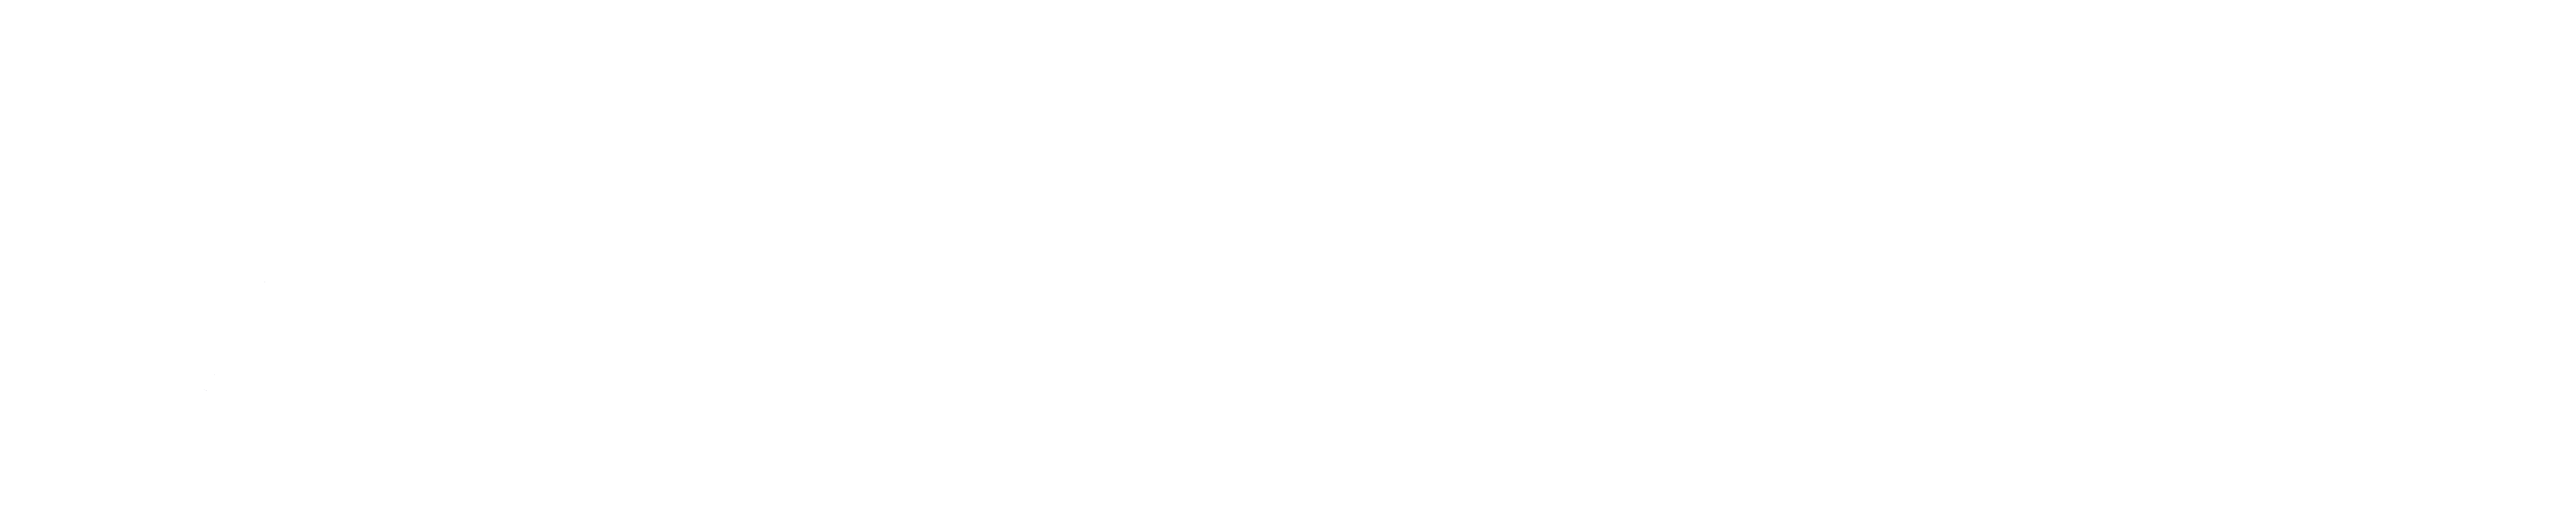 多米尼加标志